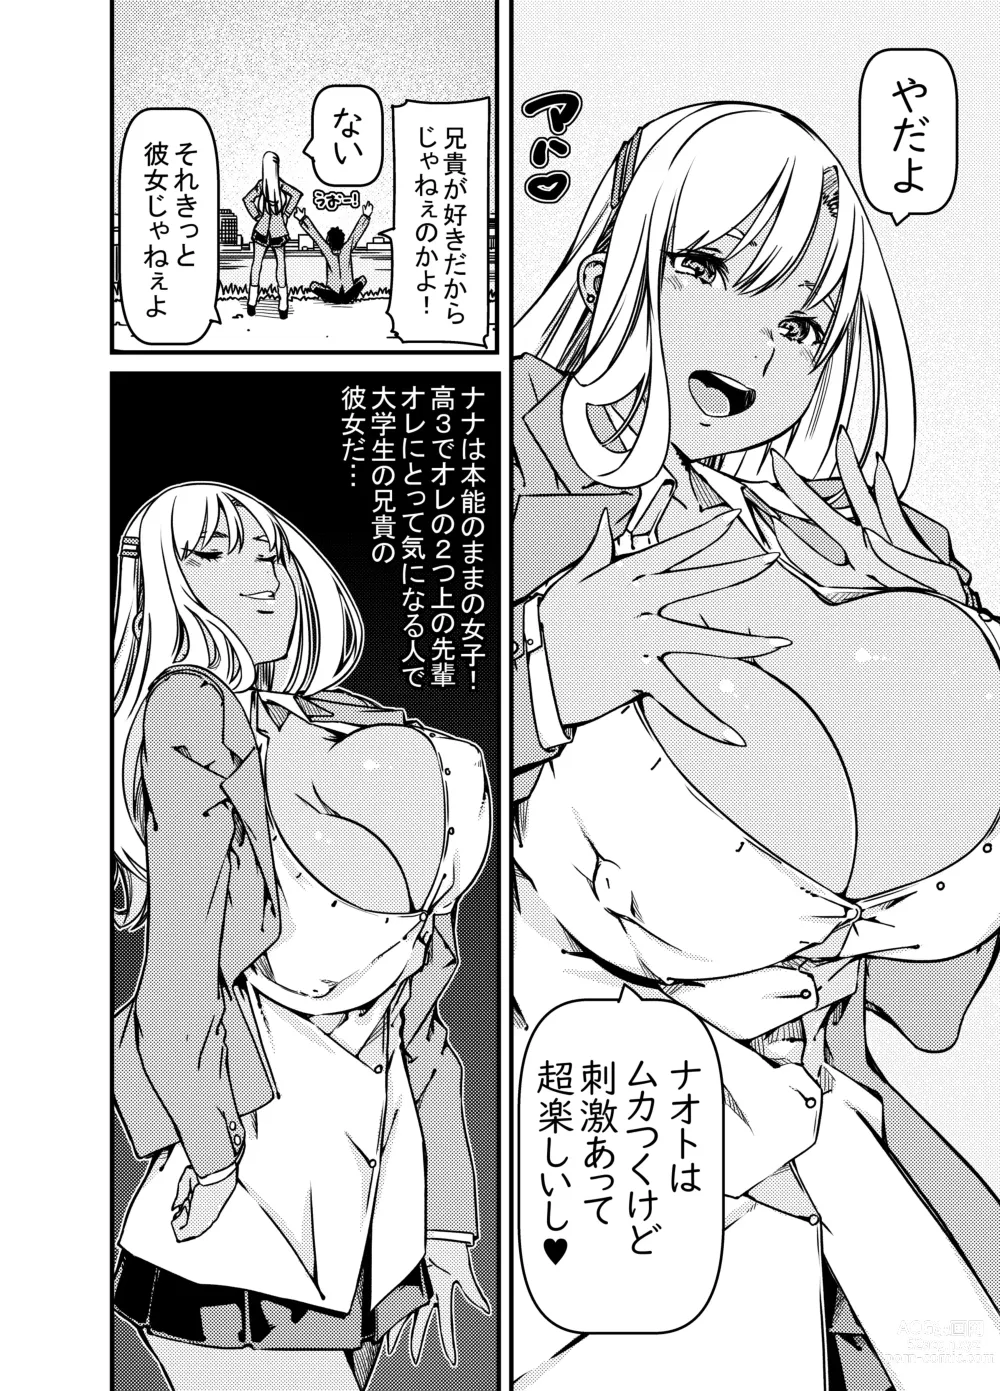 Page 5 of doujinshi Aniki no Kanojo no Kuro Gal to Heya ni Tojikomeraretan dakedo?